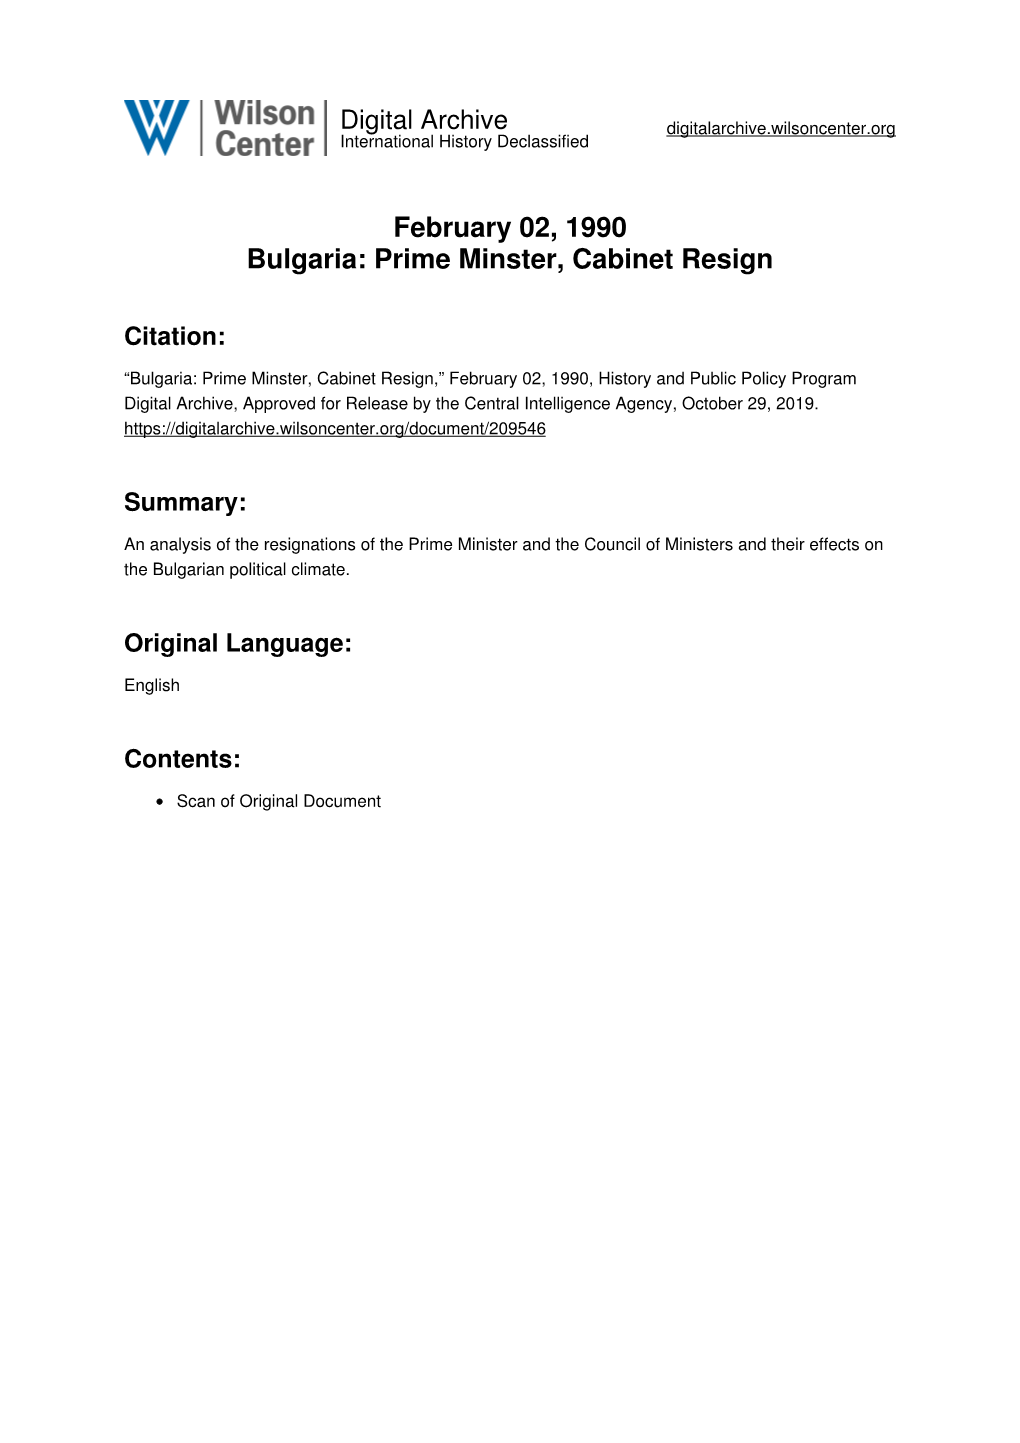 Prime Minster, Cabinet Resign